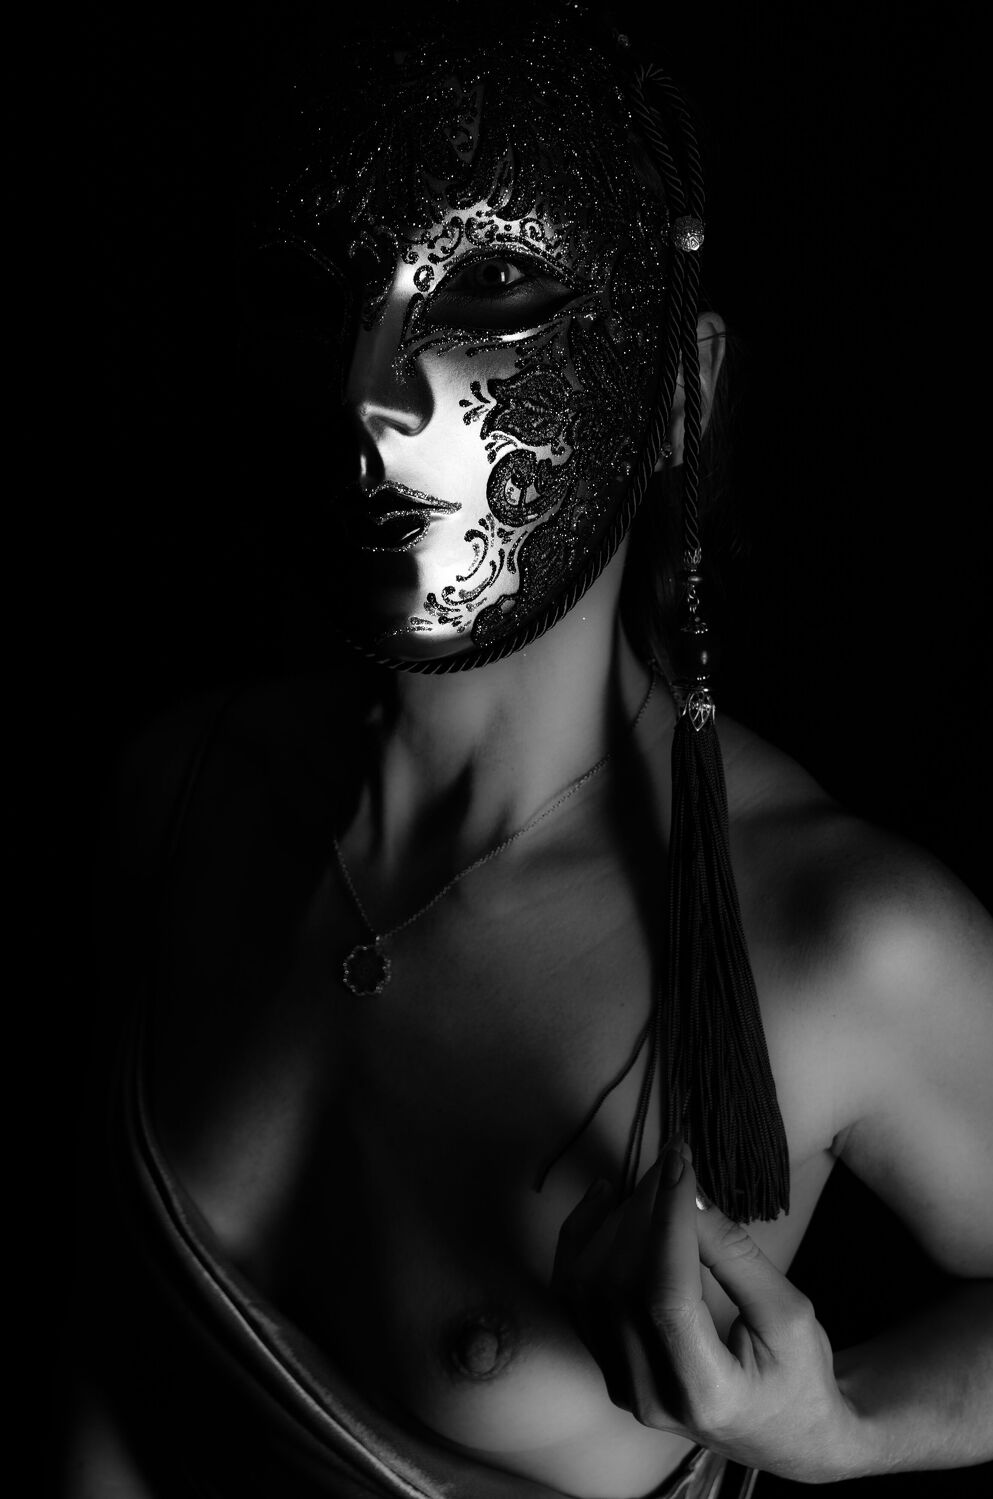 Bild mit Erotik, Teilakt, Brüste, geheimnisvoll, Maske, Venezianische Maske, Erotische Fotografie, Versteckter Akt, Busen, Maskiert